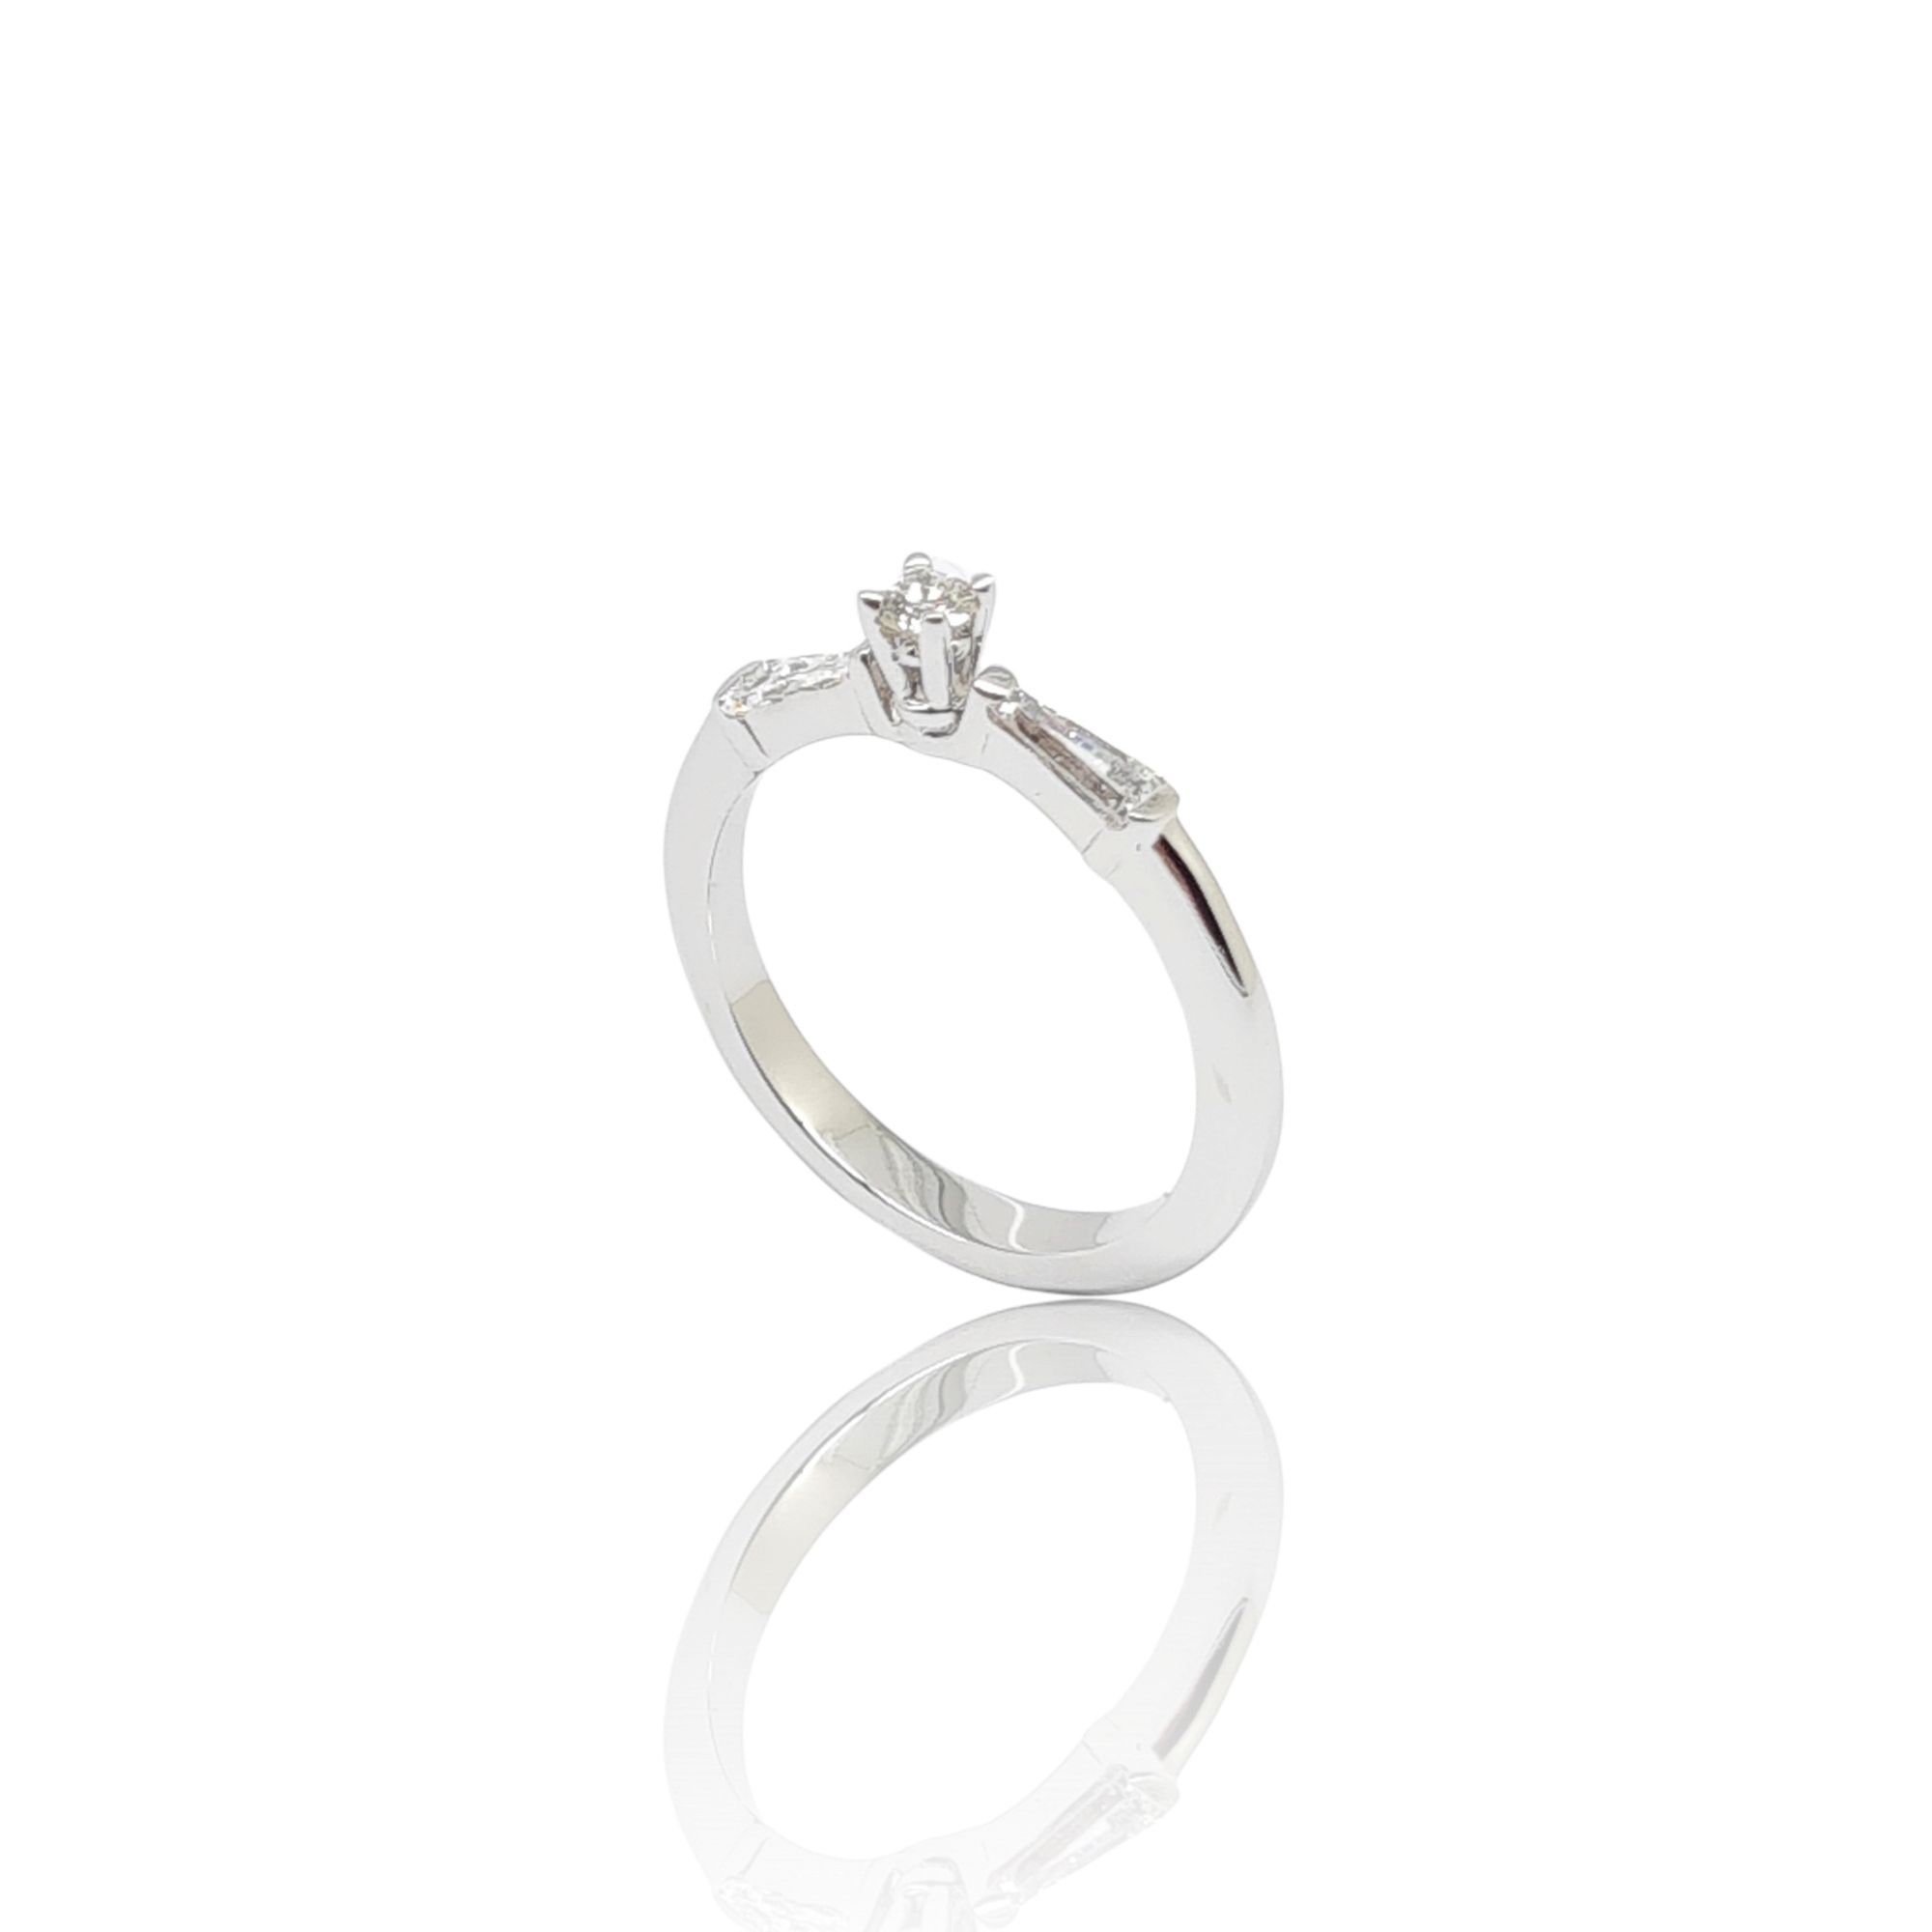 Μονόπετρο δαχτυλίδι απο λευκόχρυσο κ18 με στρογγυλό σκελετό με κεντικό διαμάντι σε καστόνι και δύο διαμάντια σε σχήμα τραπέζιου (code P2021)